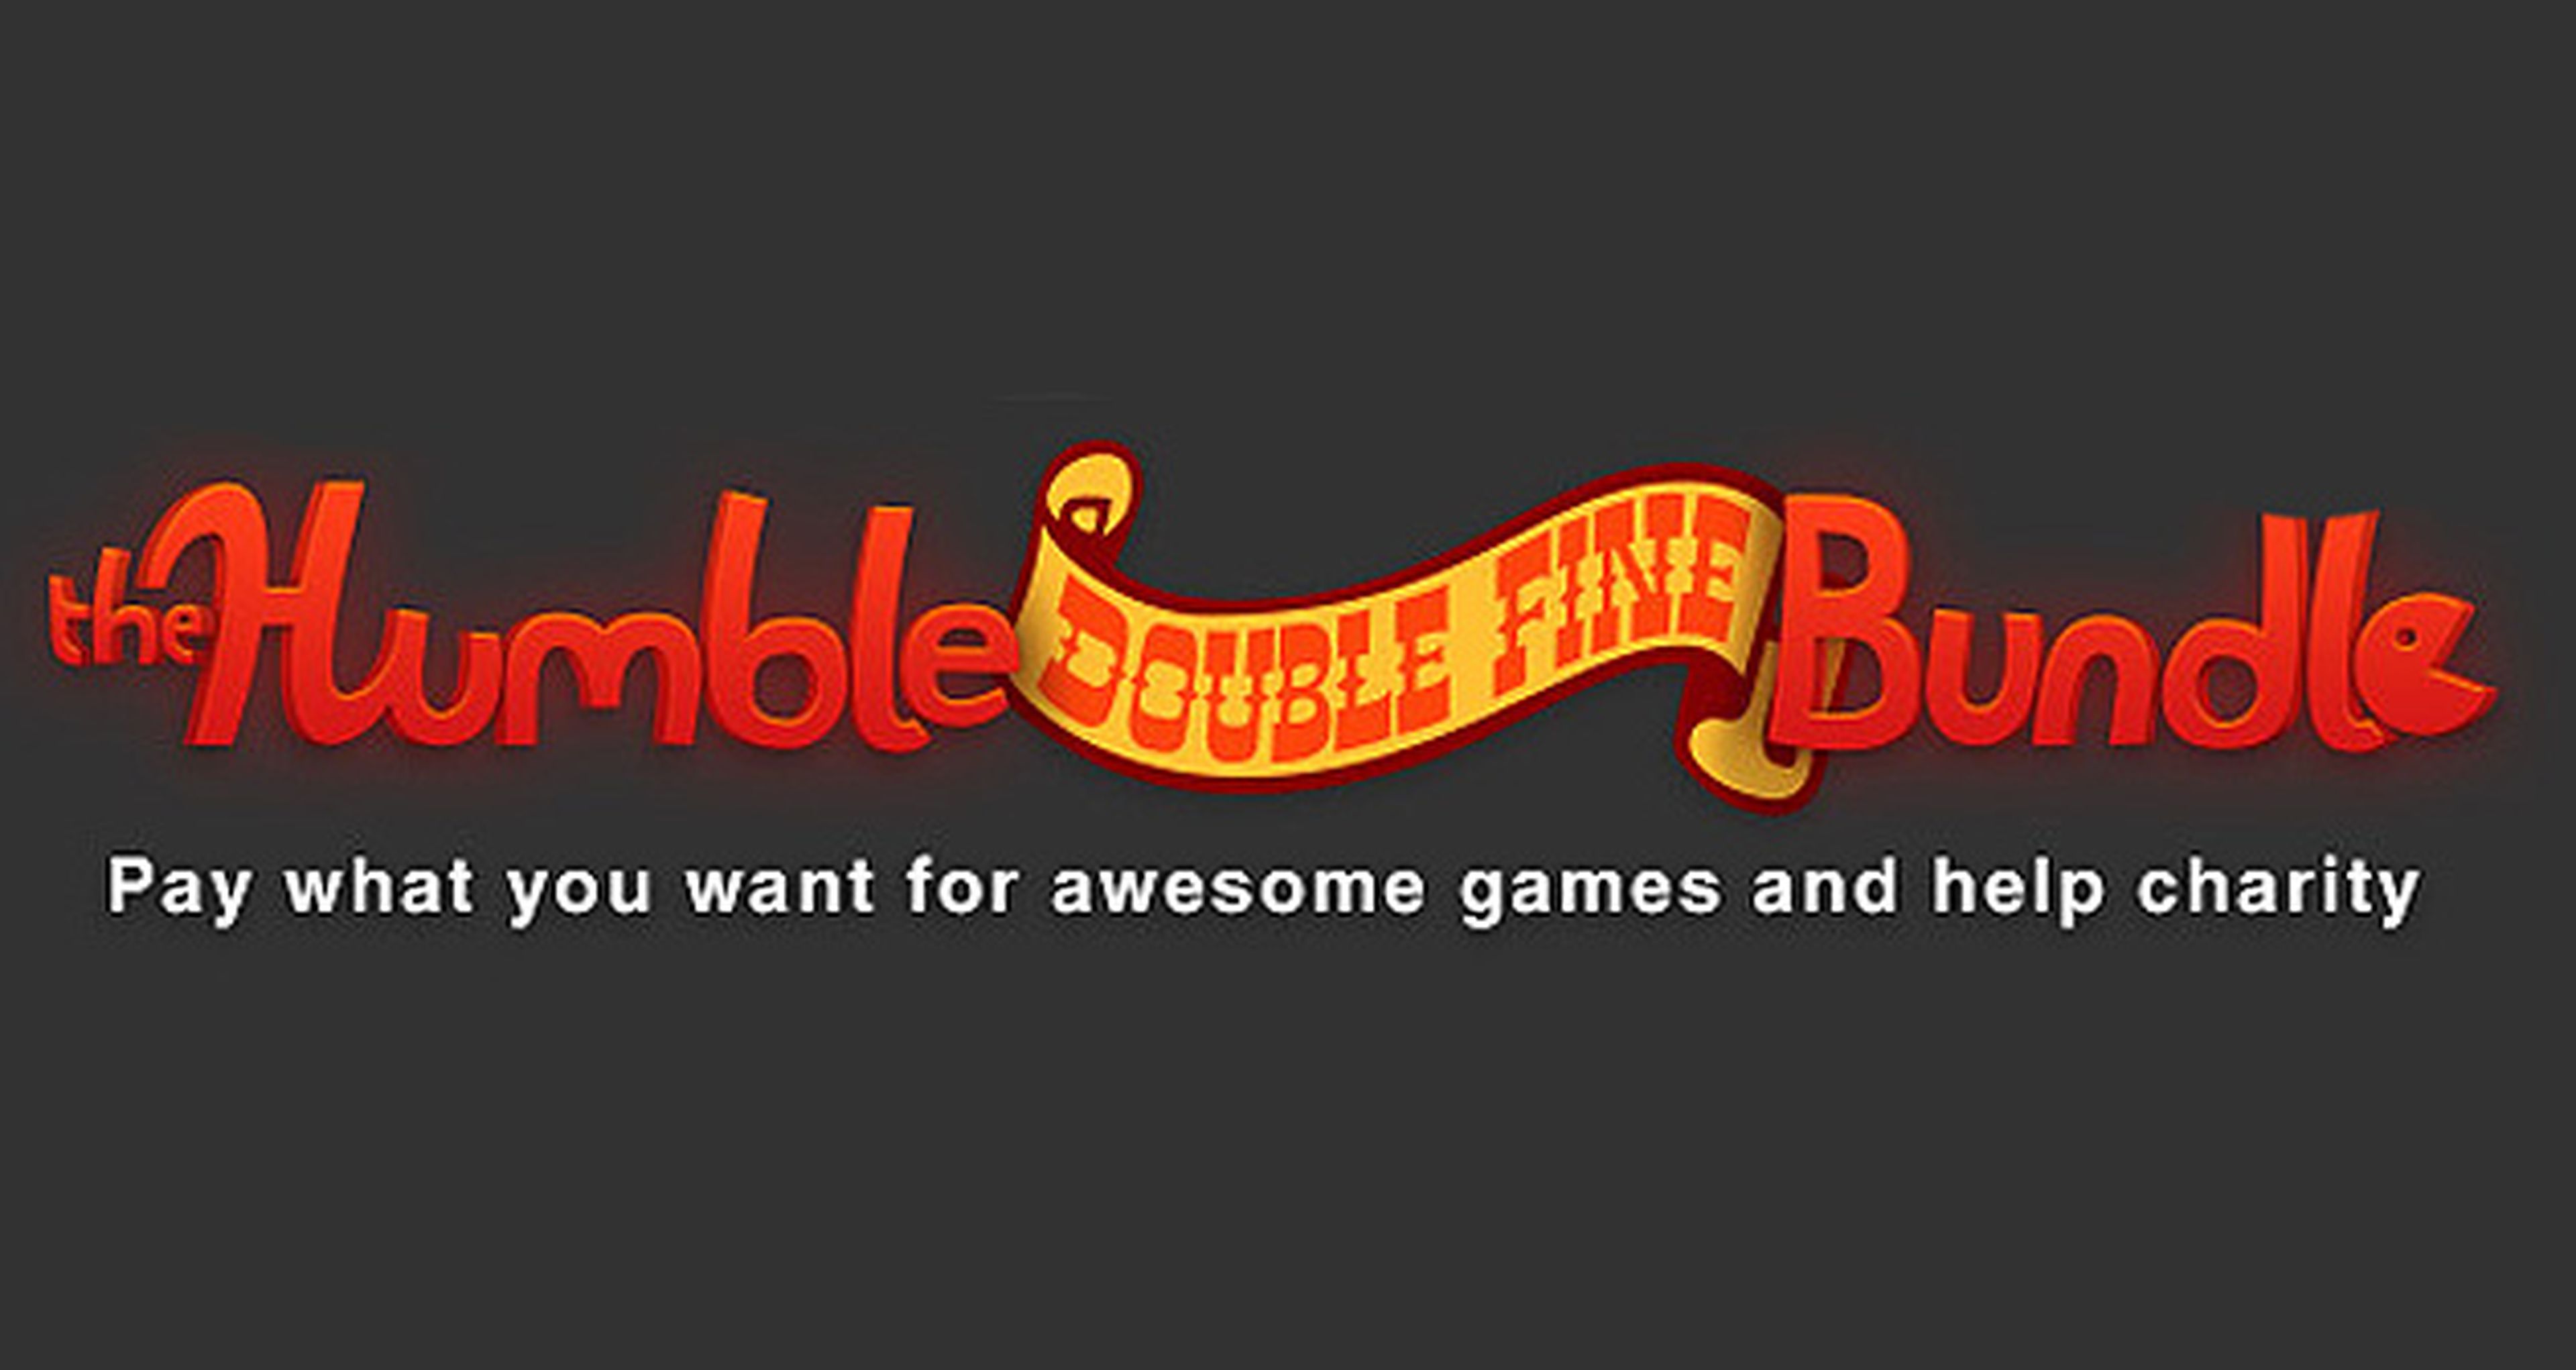 The Humble Double Fine Bundle pisa fuerte